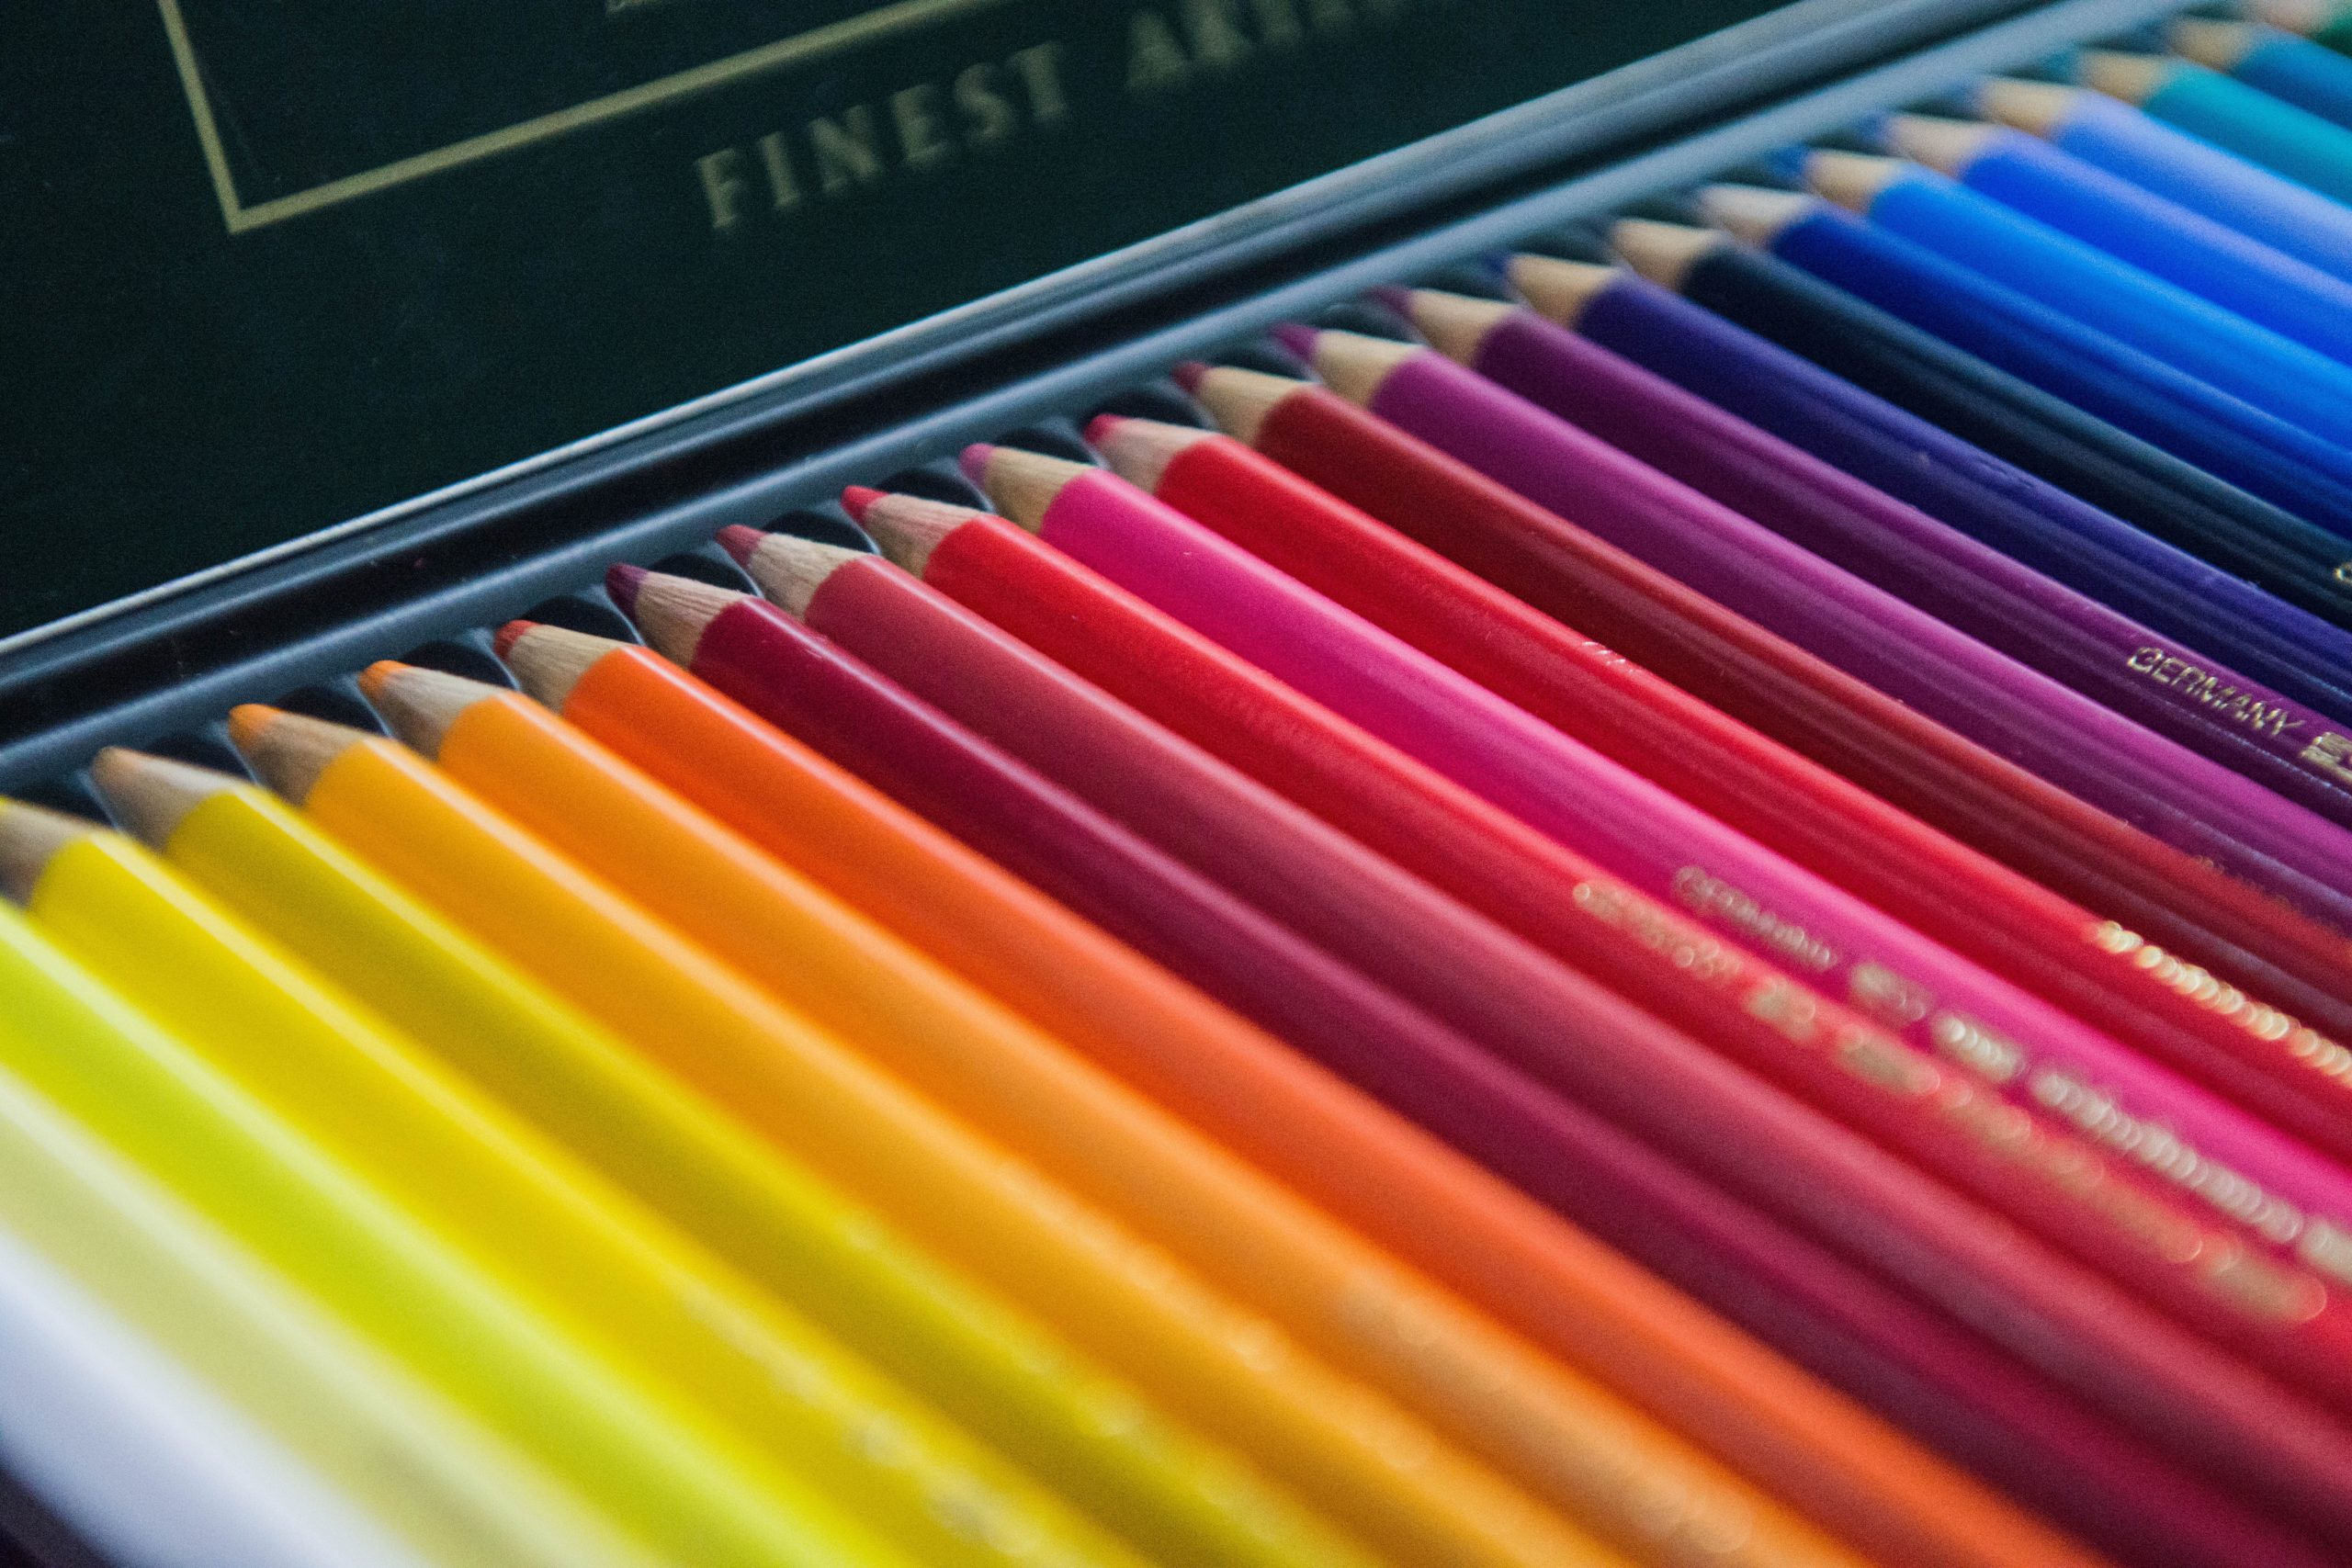 Featured image for “Víte, že vaše škola je vnímaná i na základě barev, které používá?”